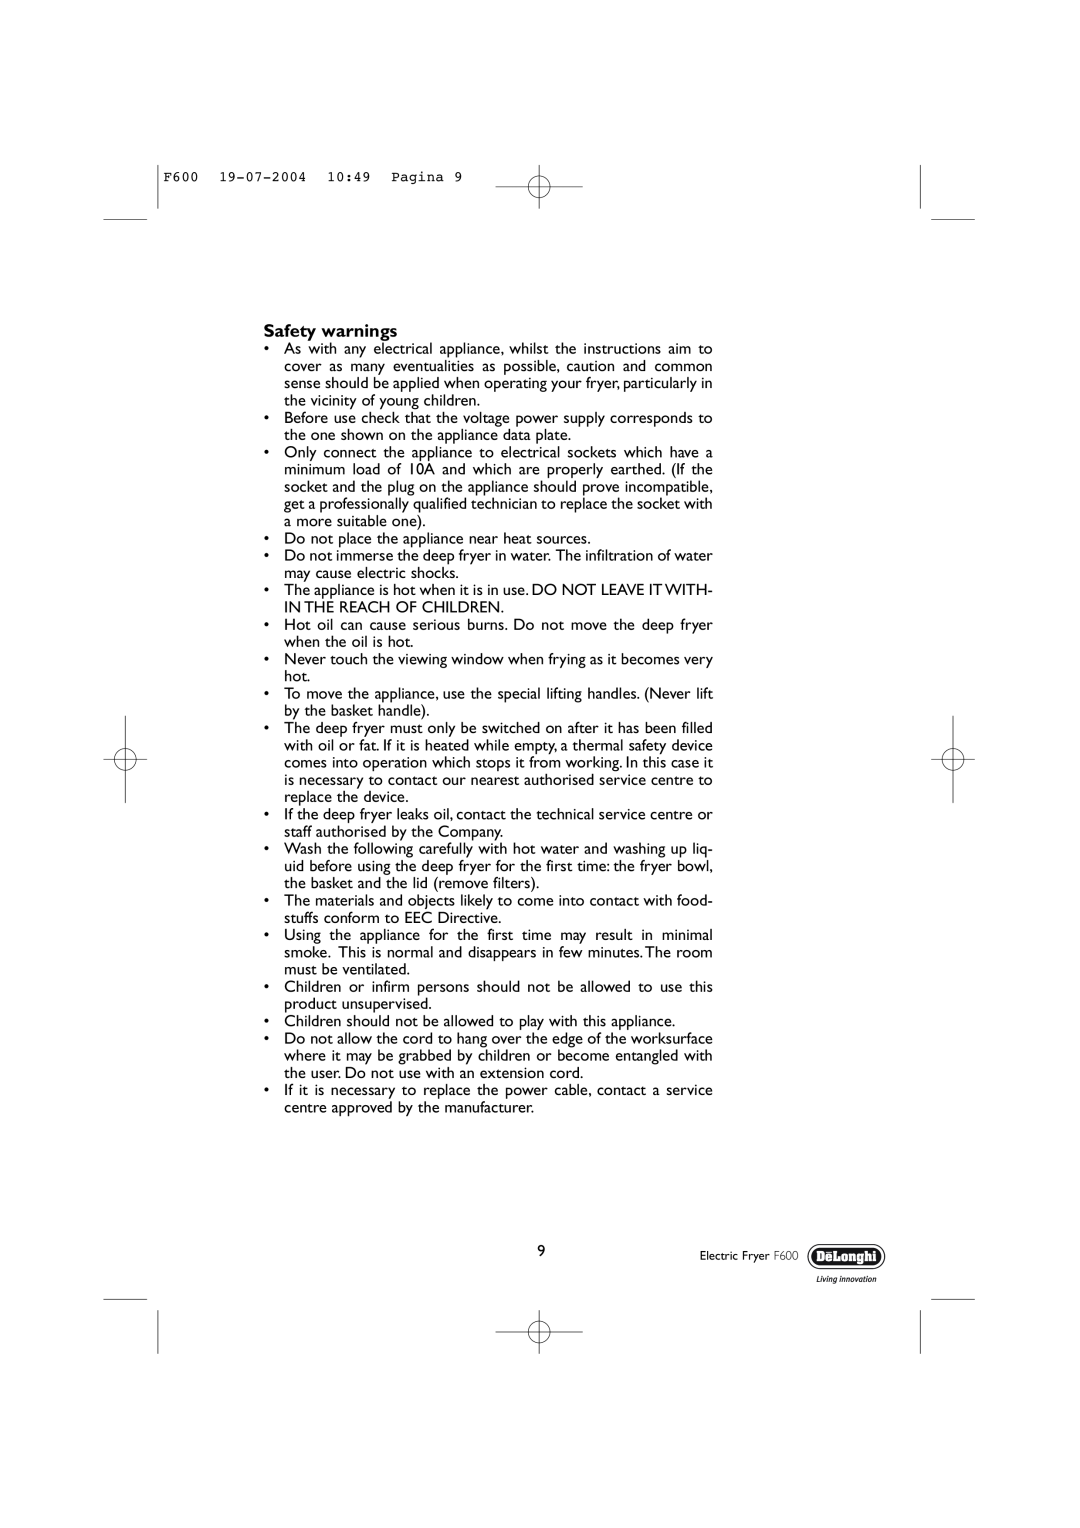 DeLonghi F600 manual Safety warnings 